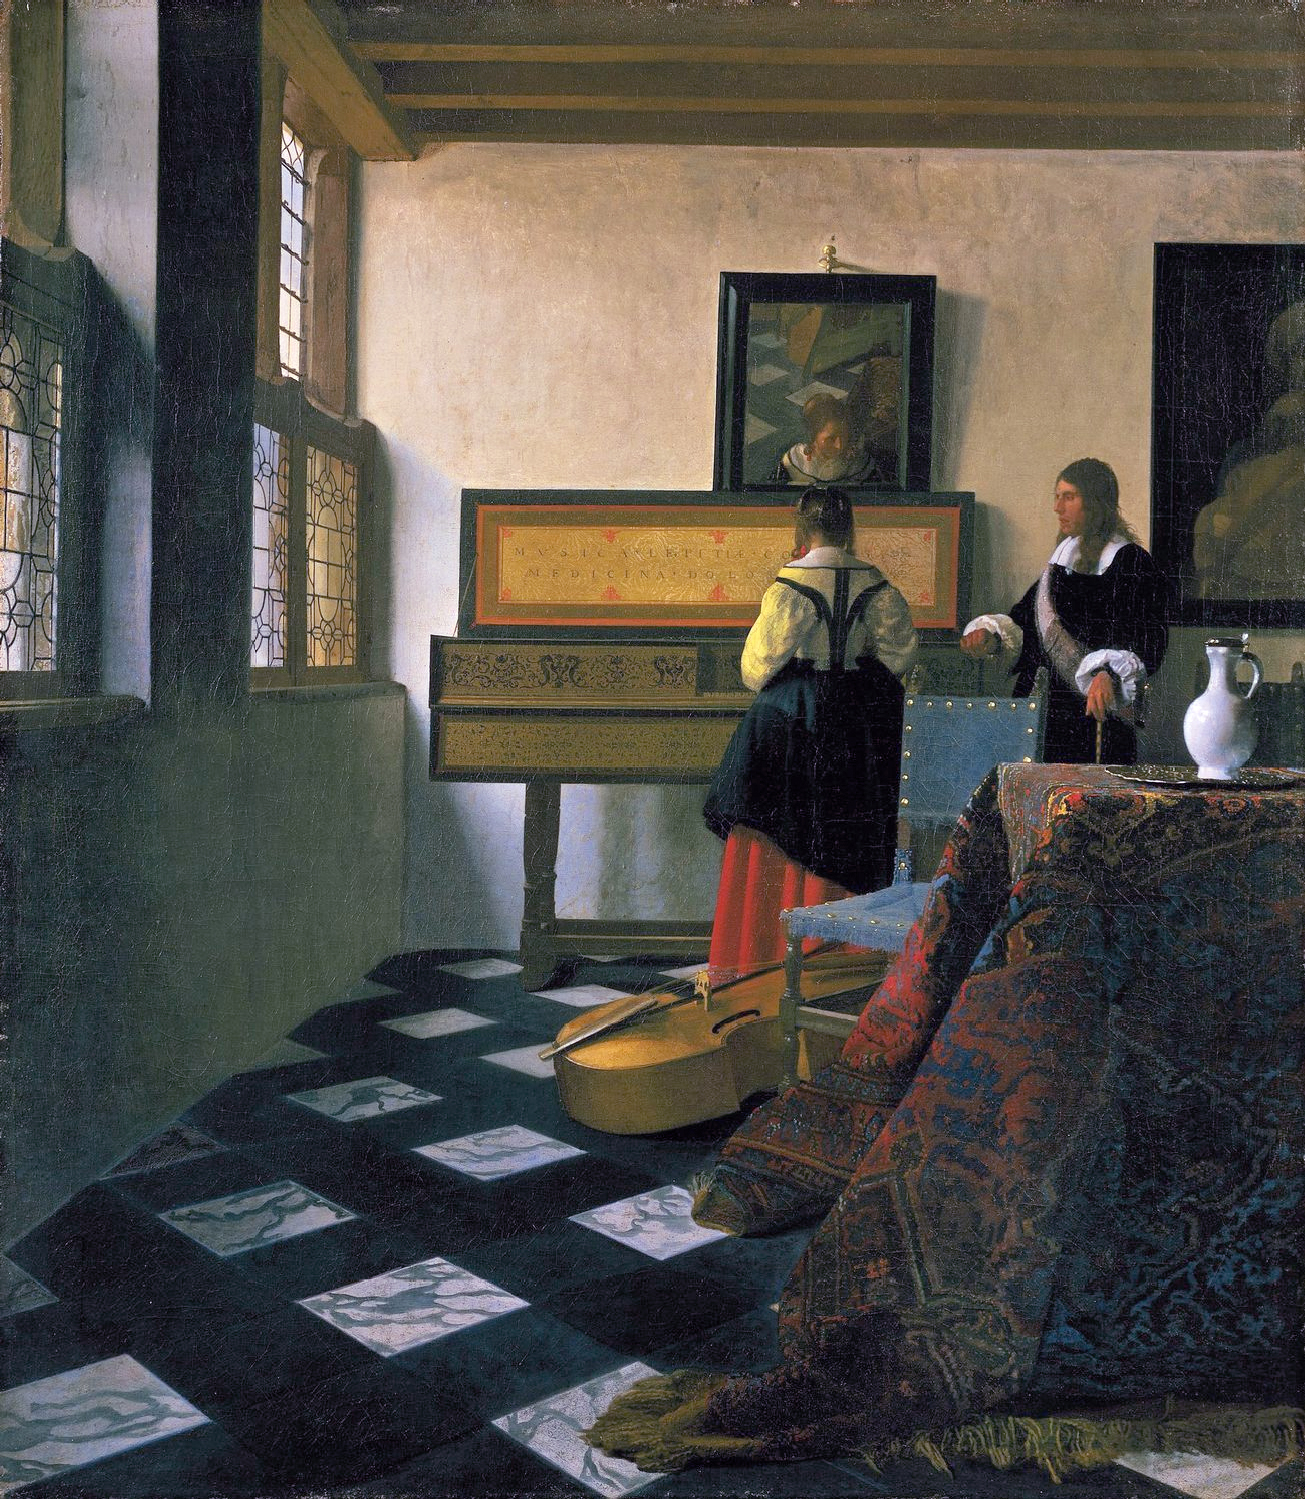 Lecția de Muzică by Johannes Vermeer - 1662 - 74.6 cm × 64.1 cm 